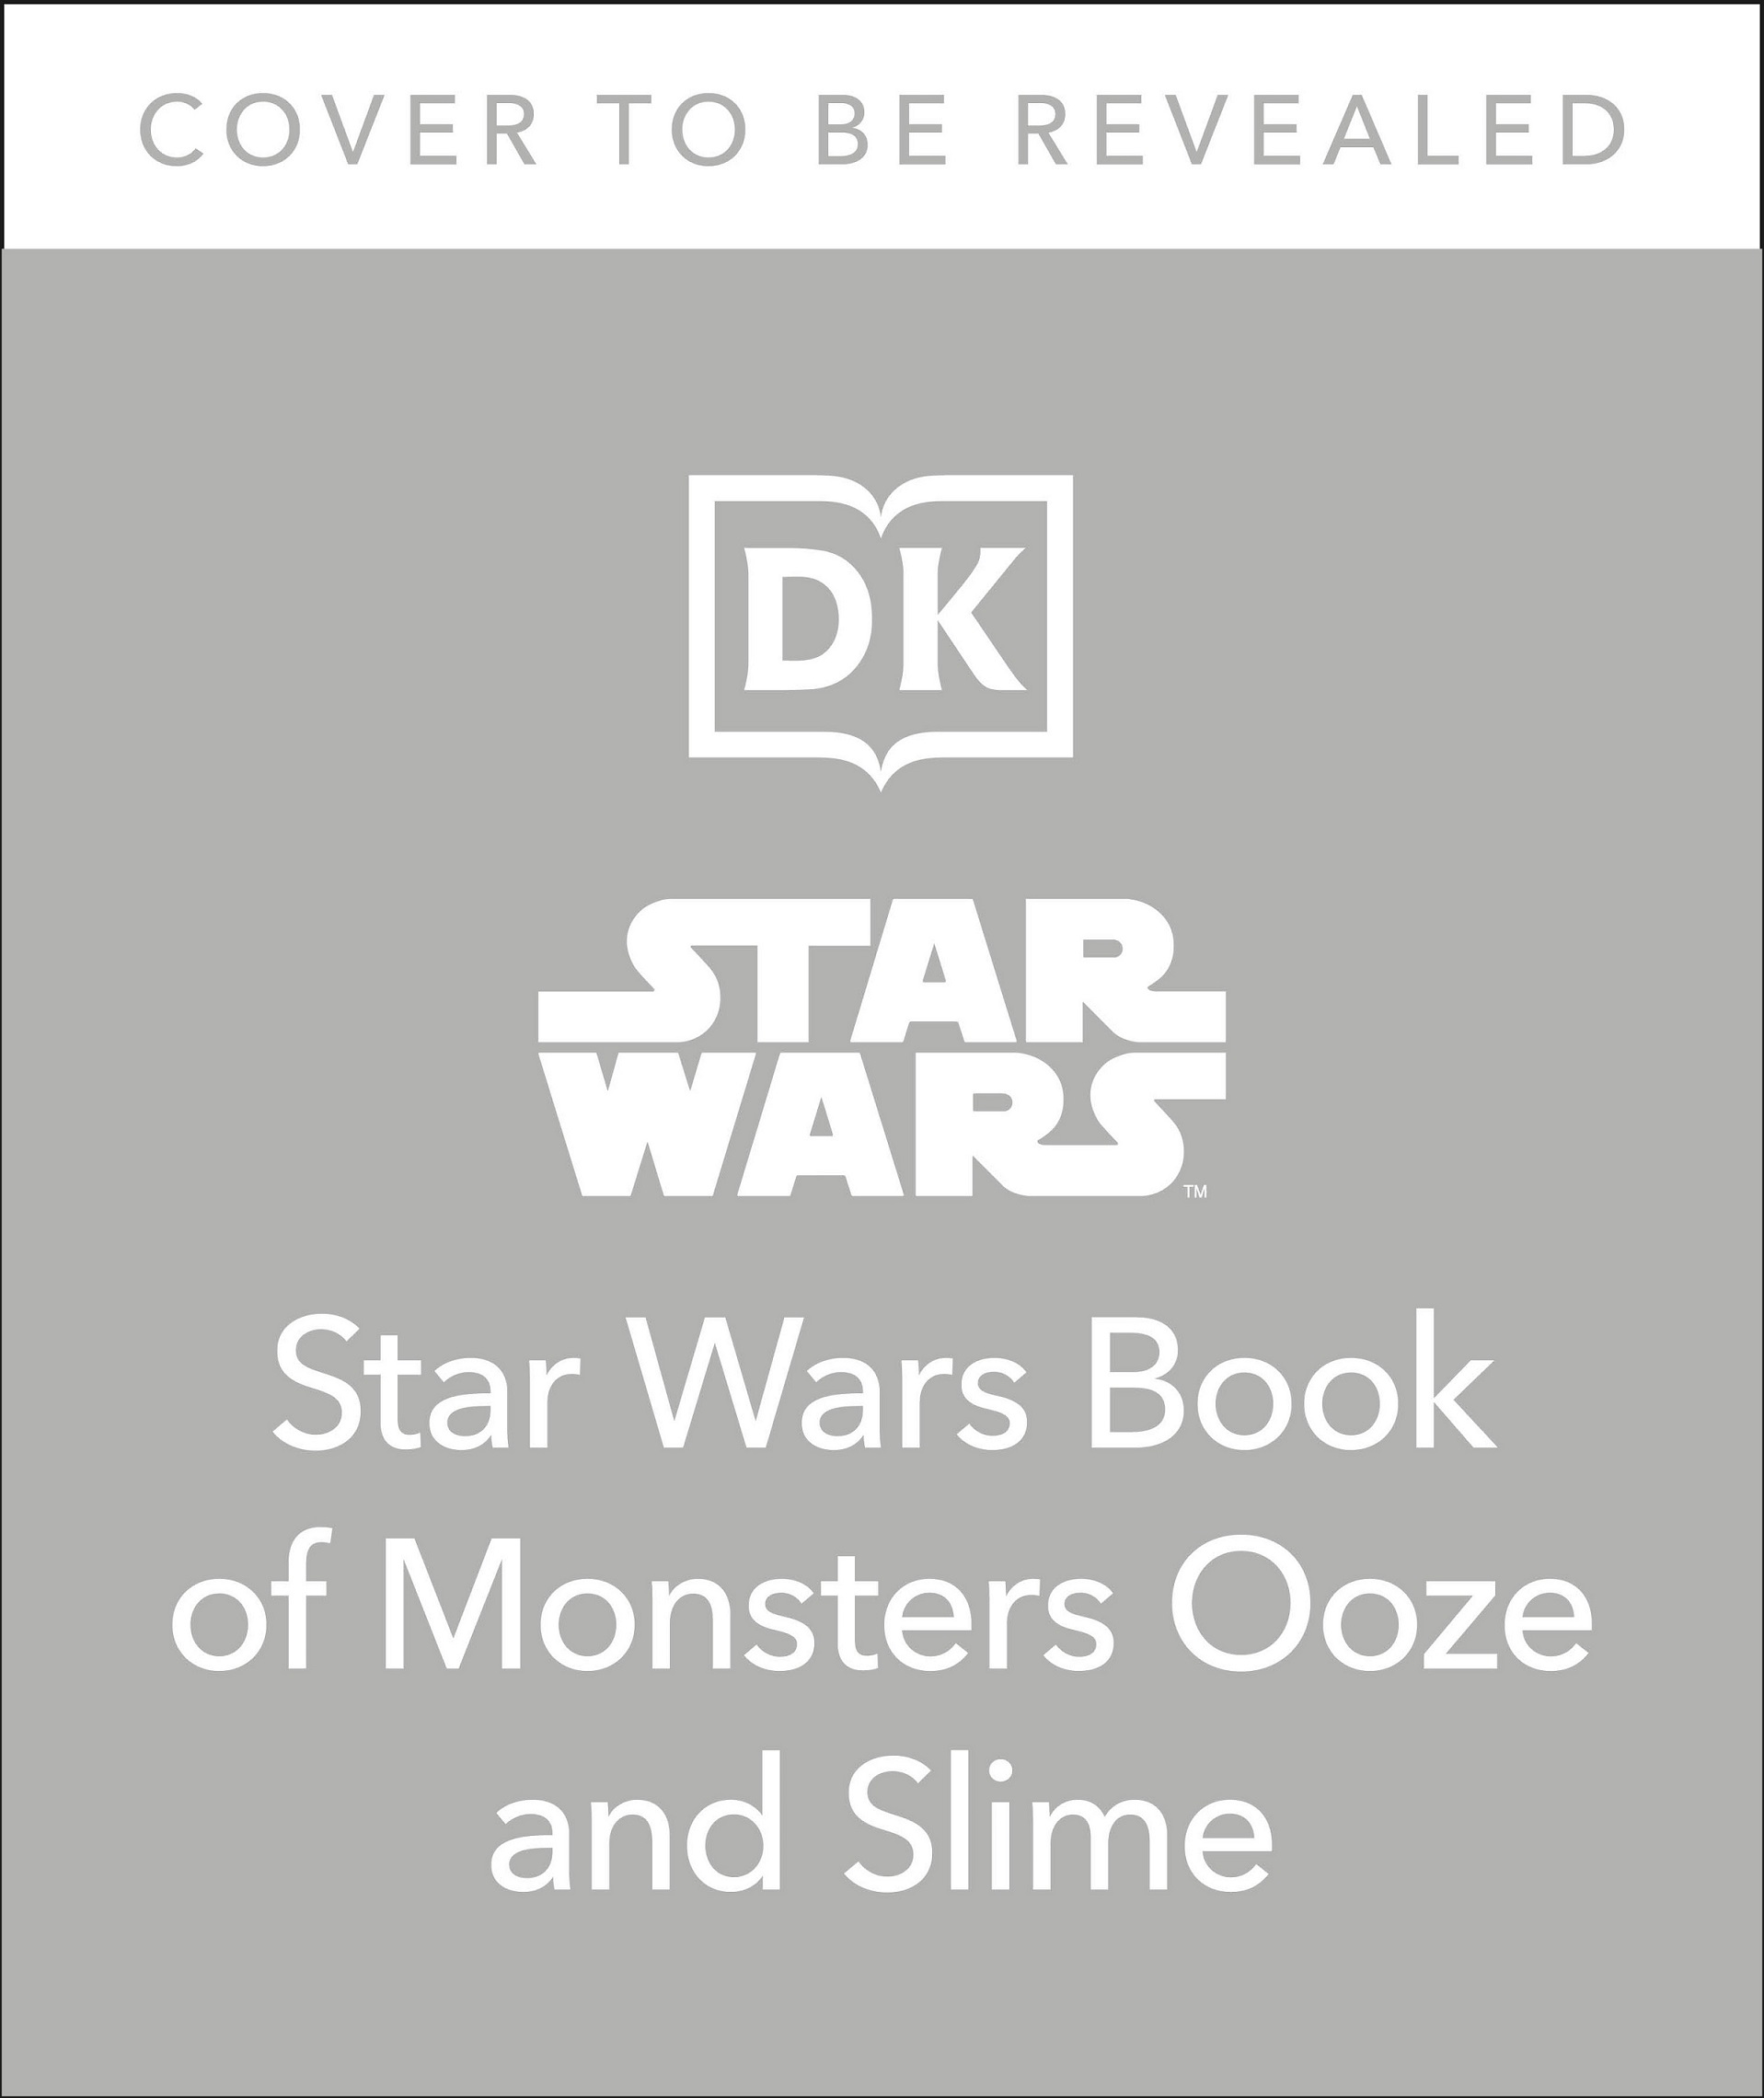 Plik:Monsters Ooze and Slime.jpg